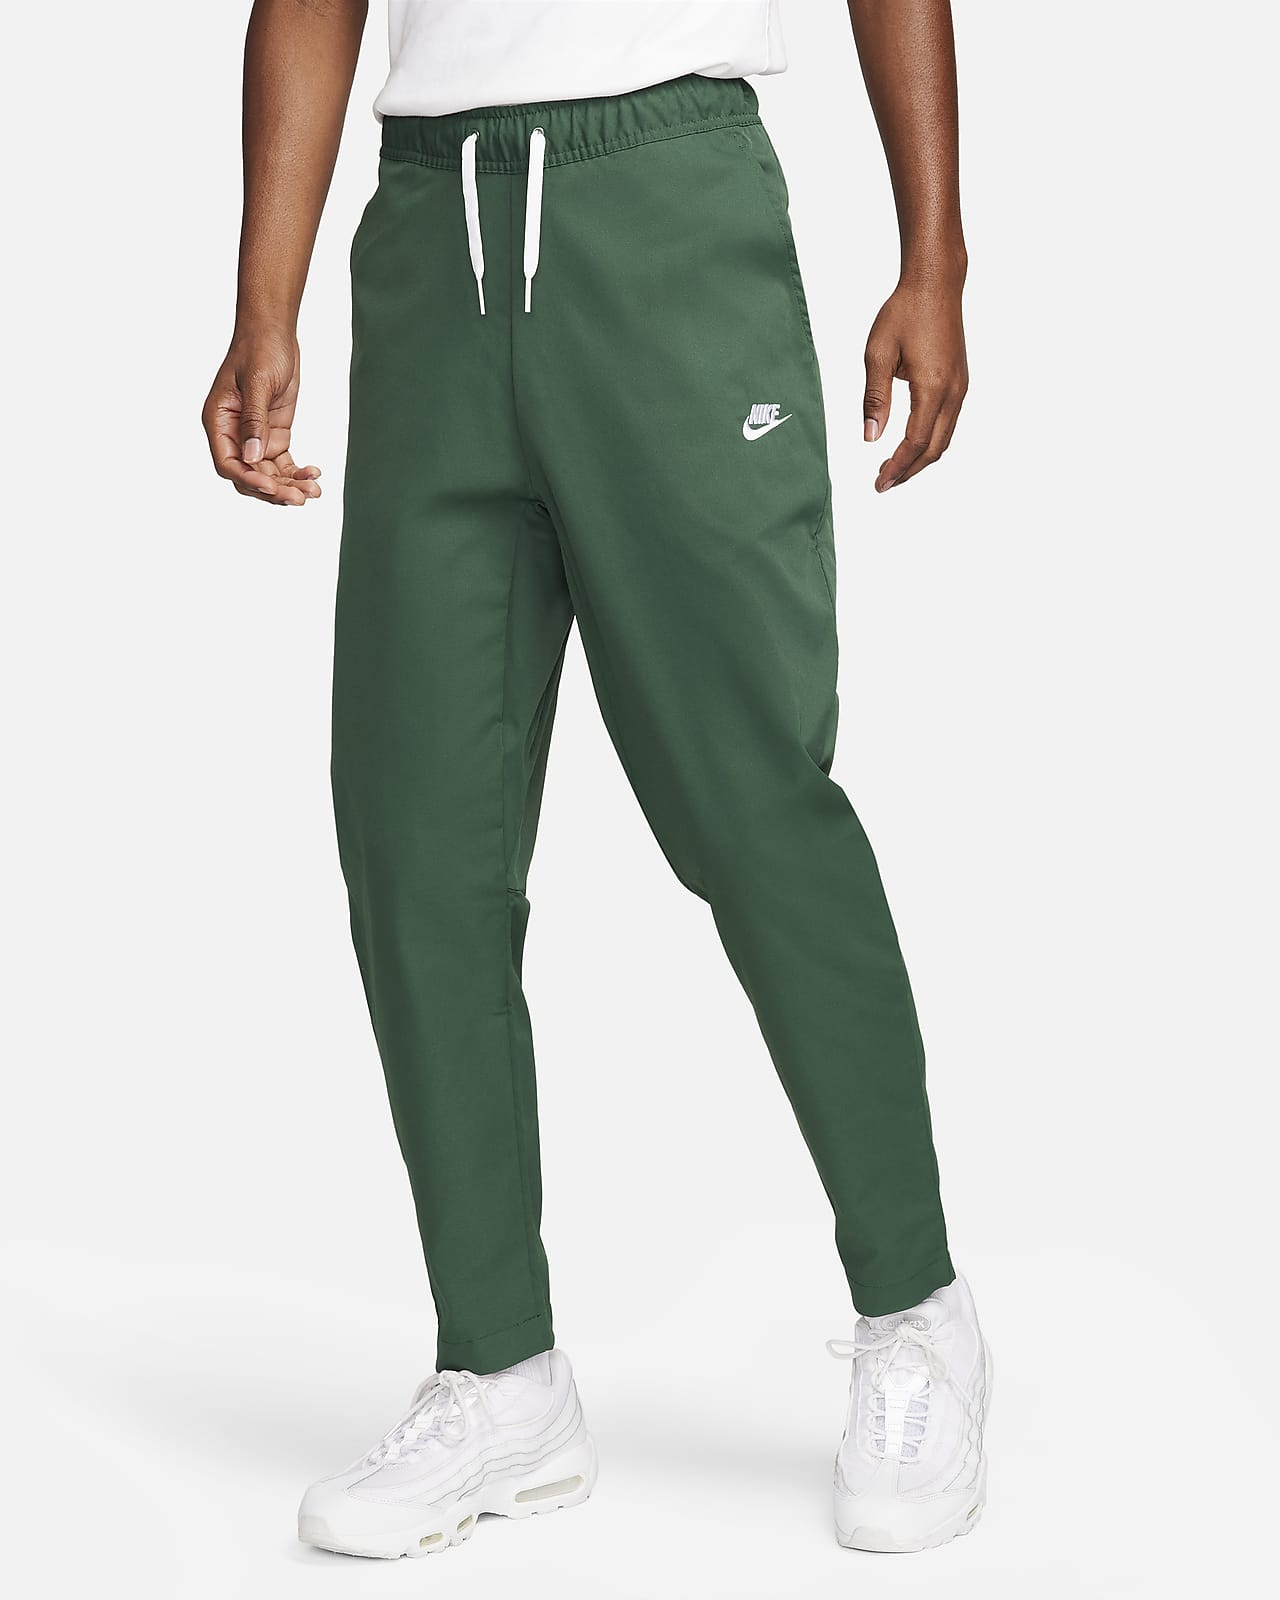 Pants entallados de tejido Woven para hombre Nike Club